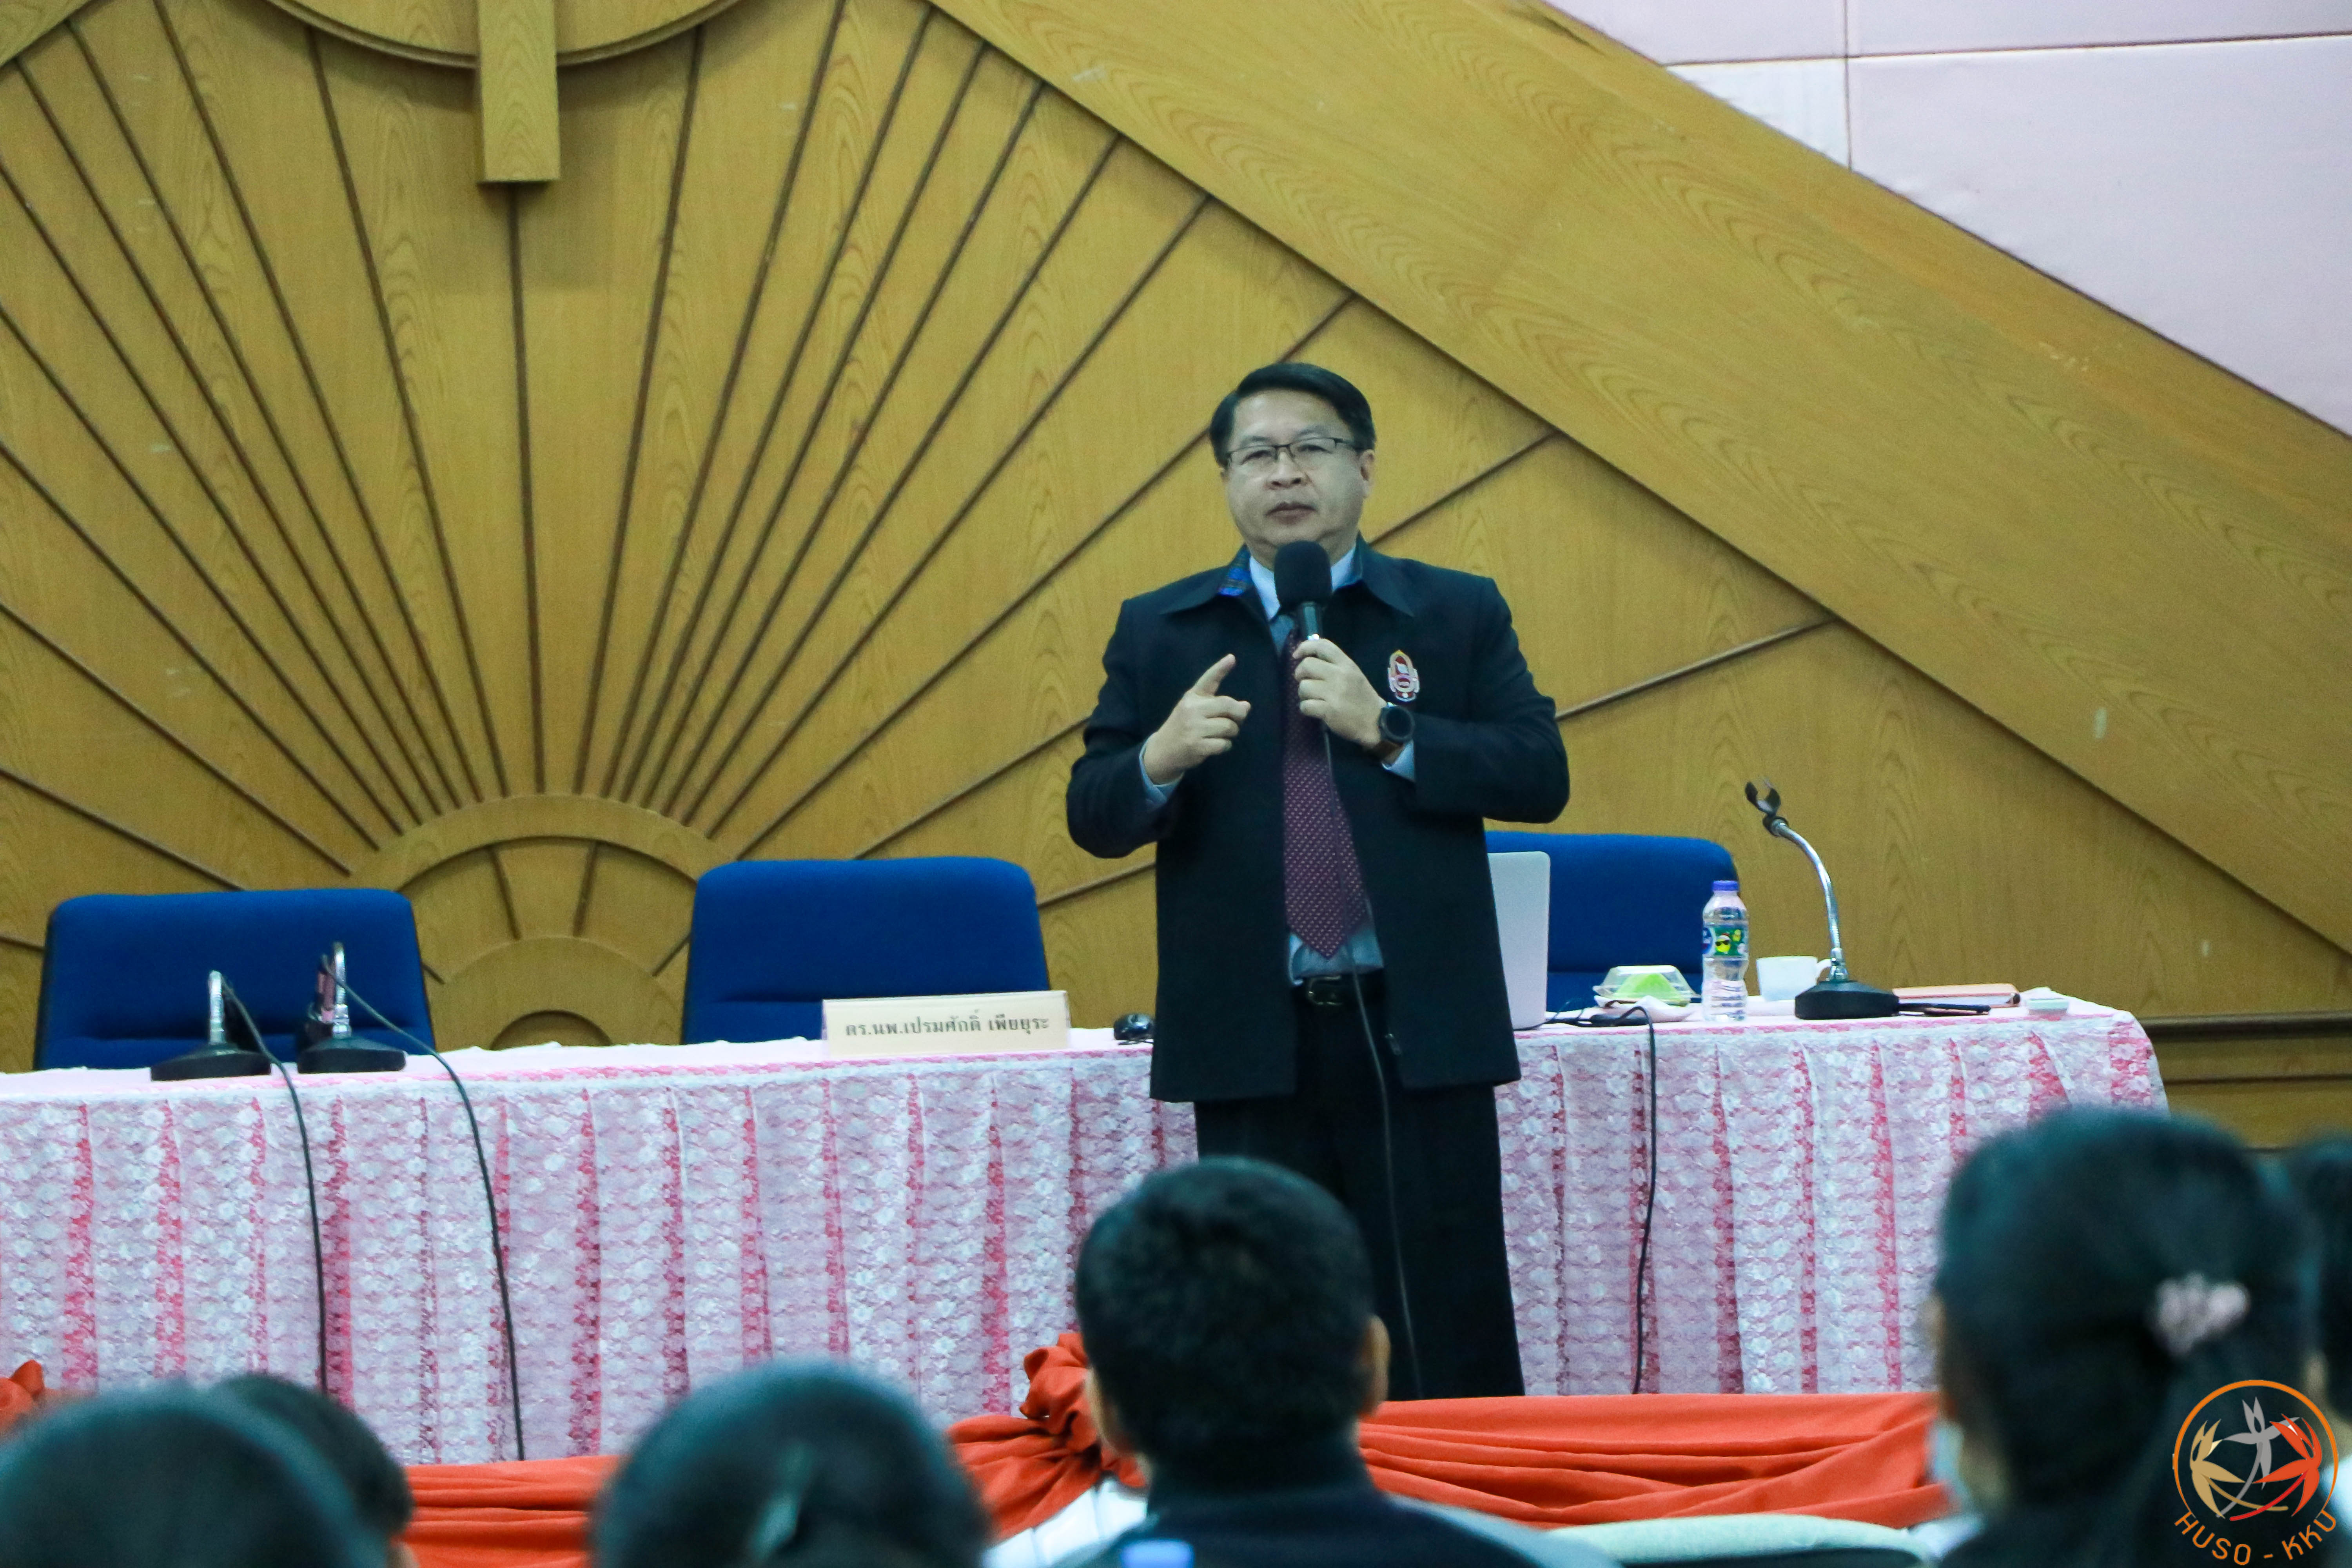 สาขาวิชารัฐประศาสนศาสตร์ จัดโครงการบรรยายพิเศษ “มุมมองของนักการเมืองต่อการบริหารงานราชการไทย”